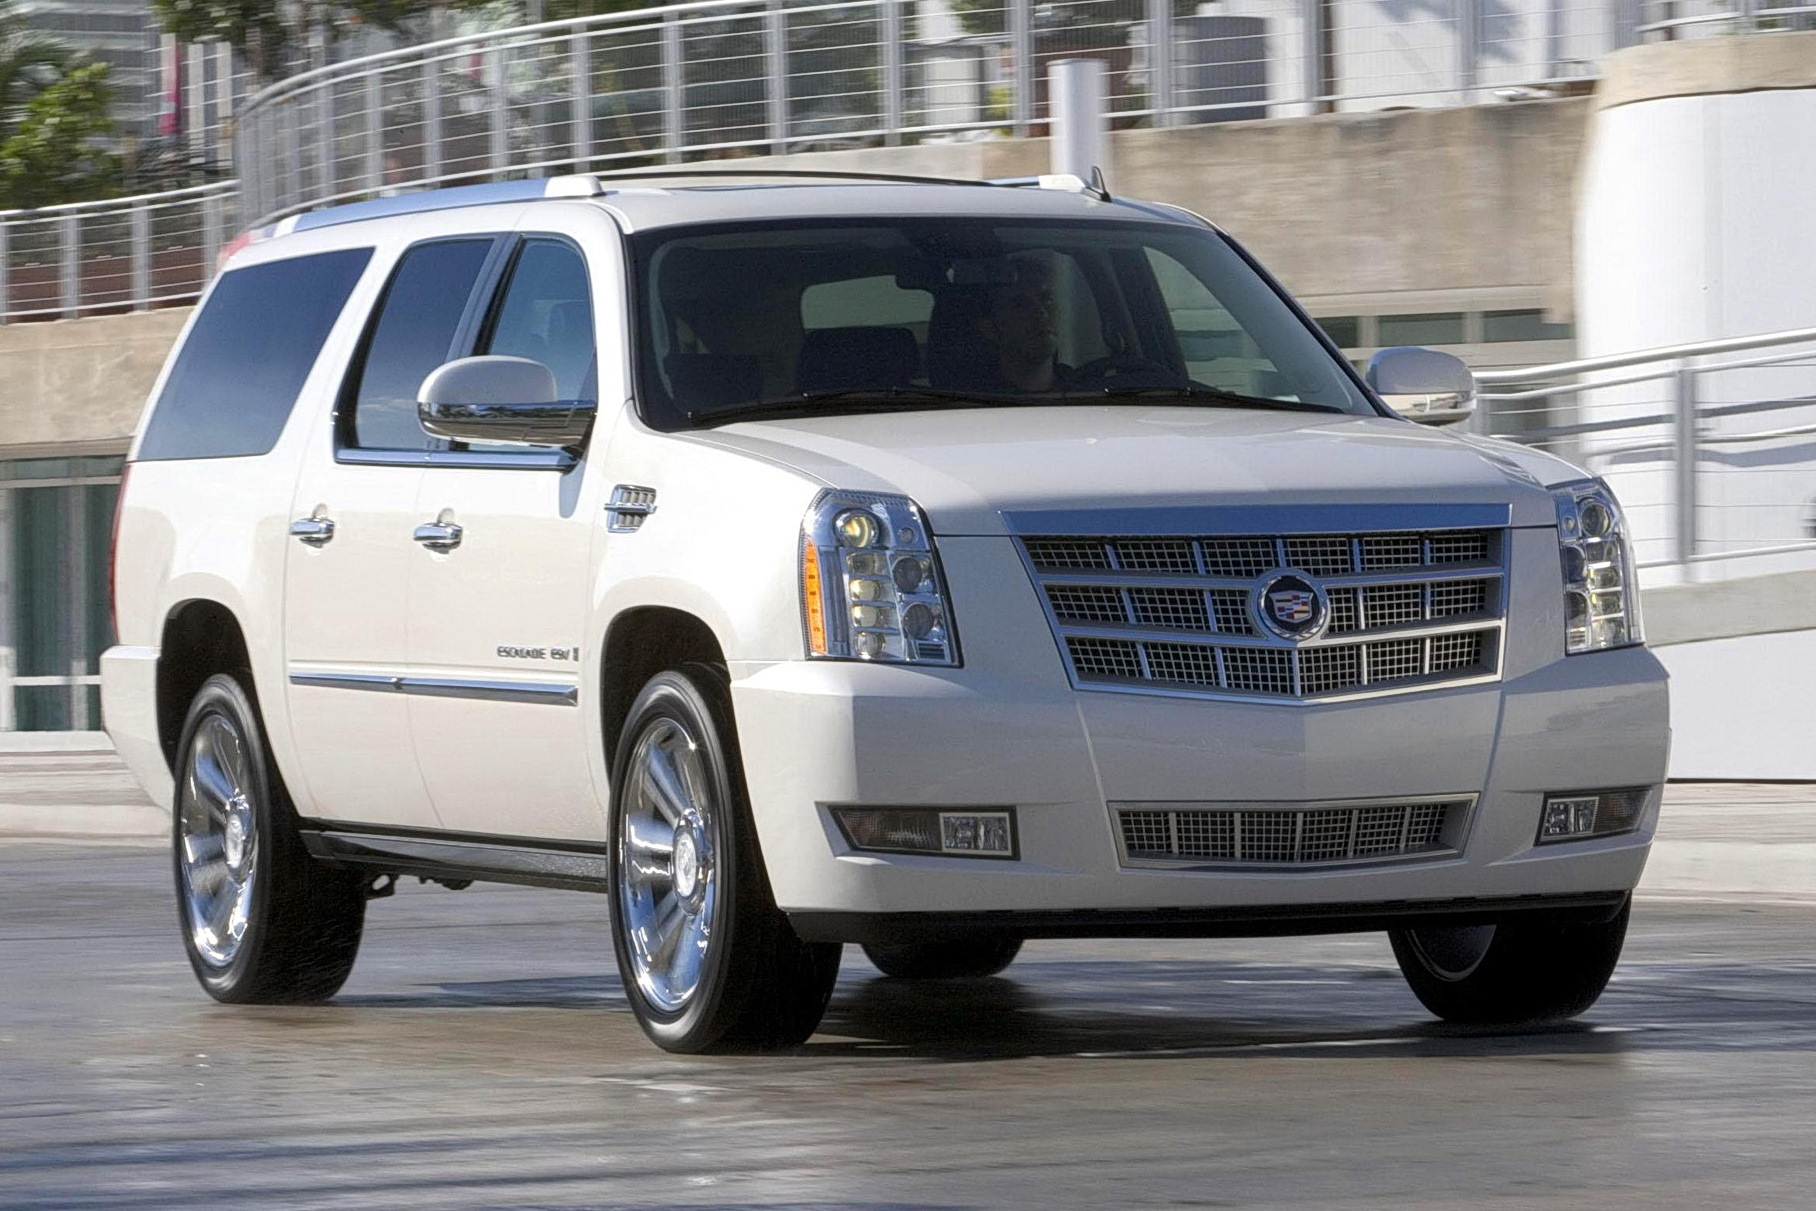 В России выявили дефект у 11 тысяч внедорожников Cadillac и Chevrolet